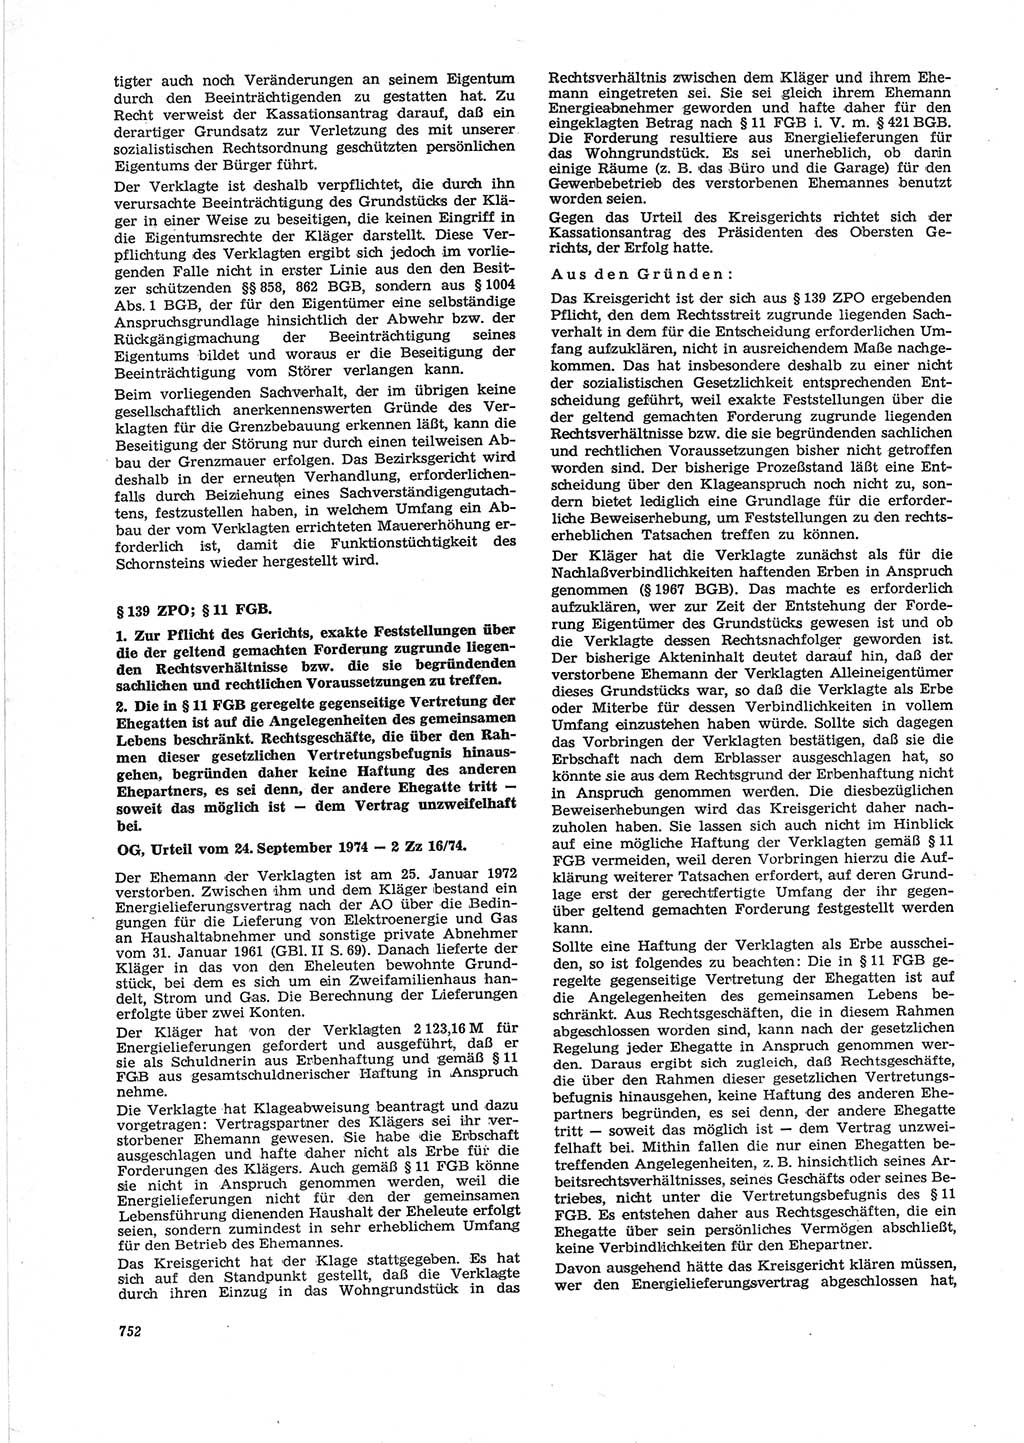 Neue Justiz (NJ), Zeitschrift für Recht und Rechtswissenschaft [Deutsche Demokratische Republik (DDR)], 28. Jahrgang 1974, Seite 752 (NJ DDR 1974, S. 752)